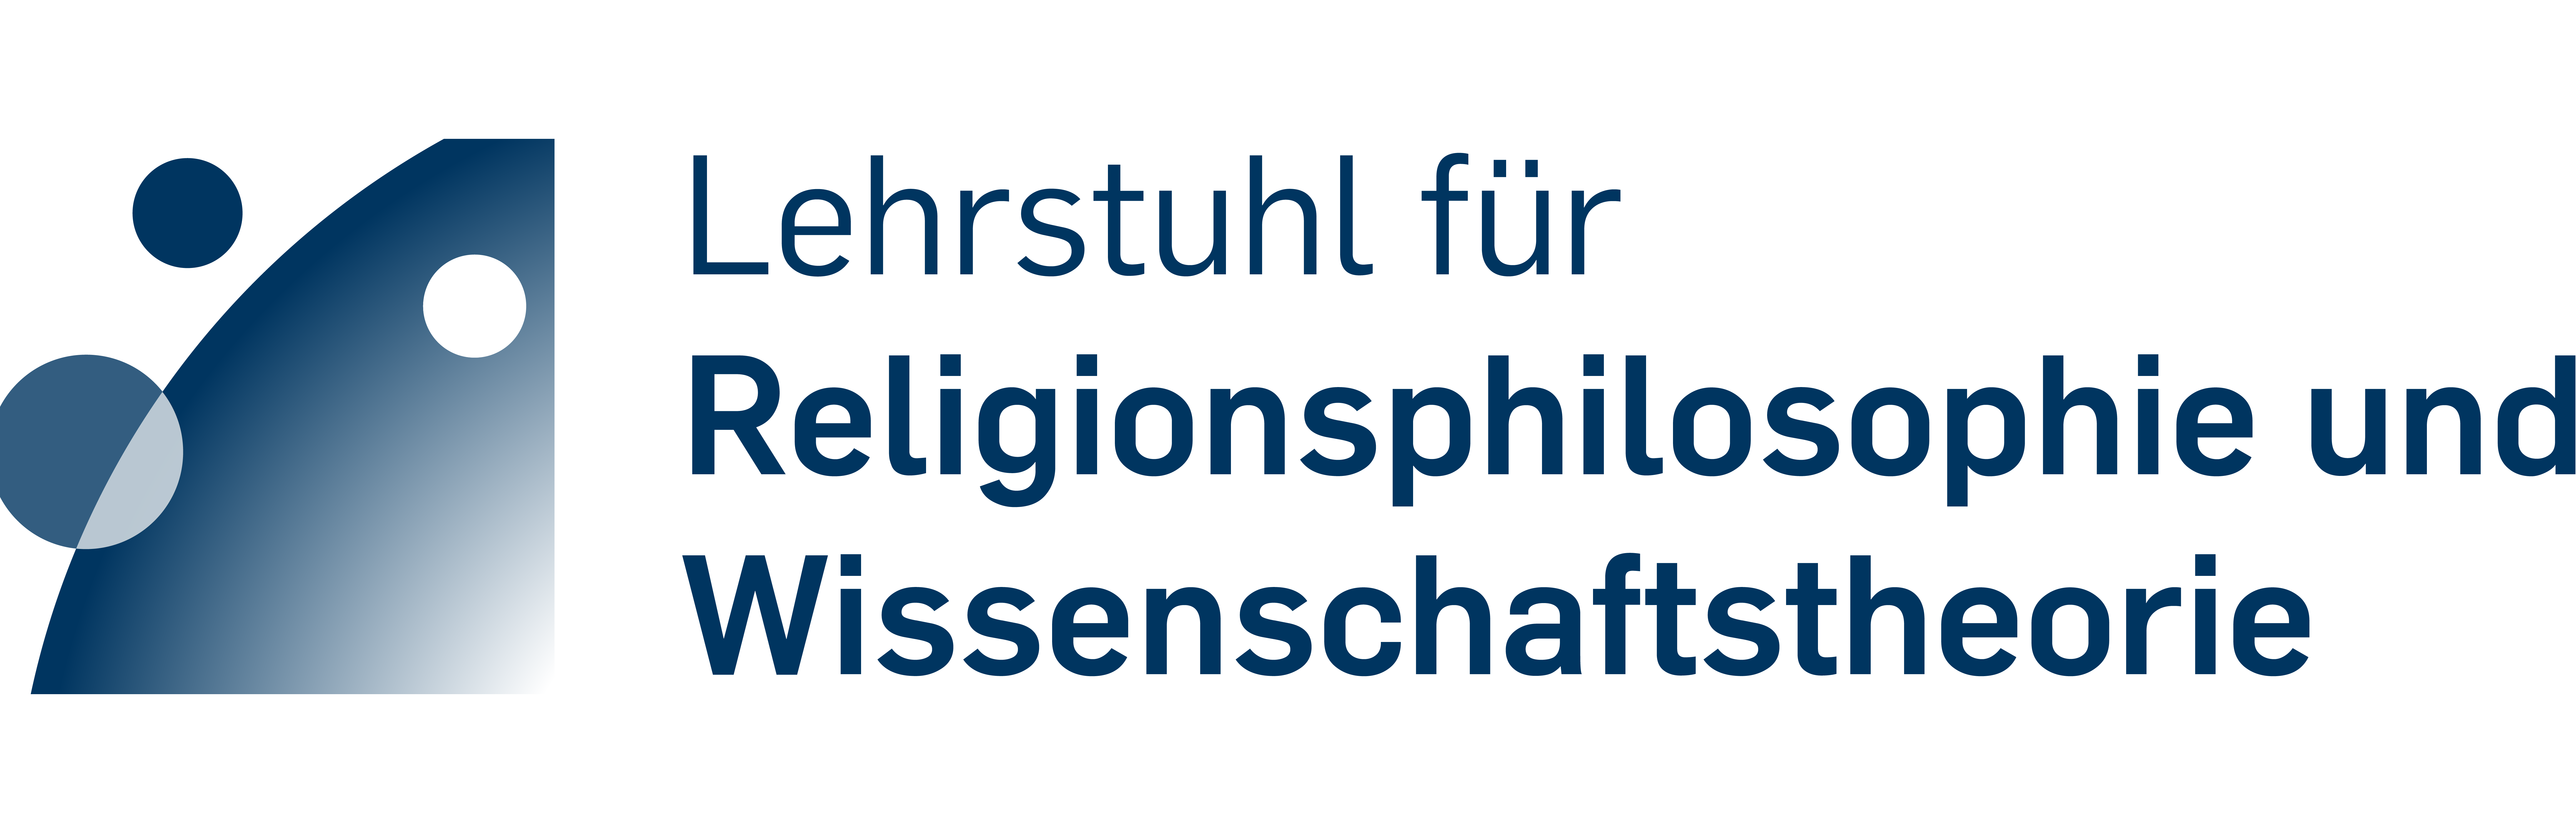 Logo Lehrstuhl für Religionsphilosophie und Wissenschaftstheorie